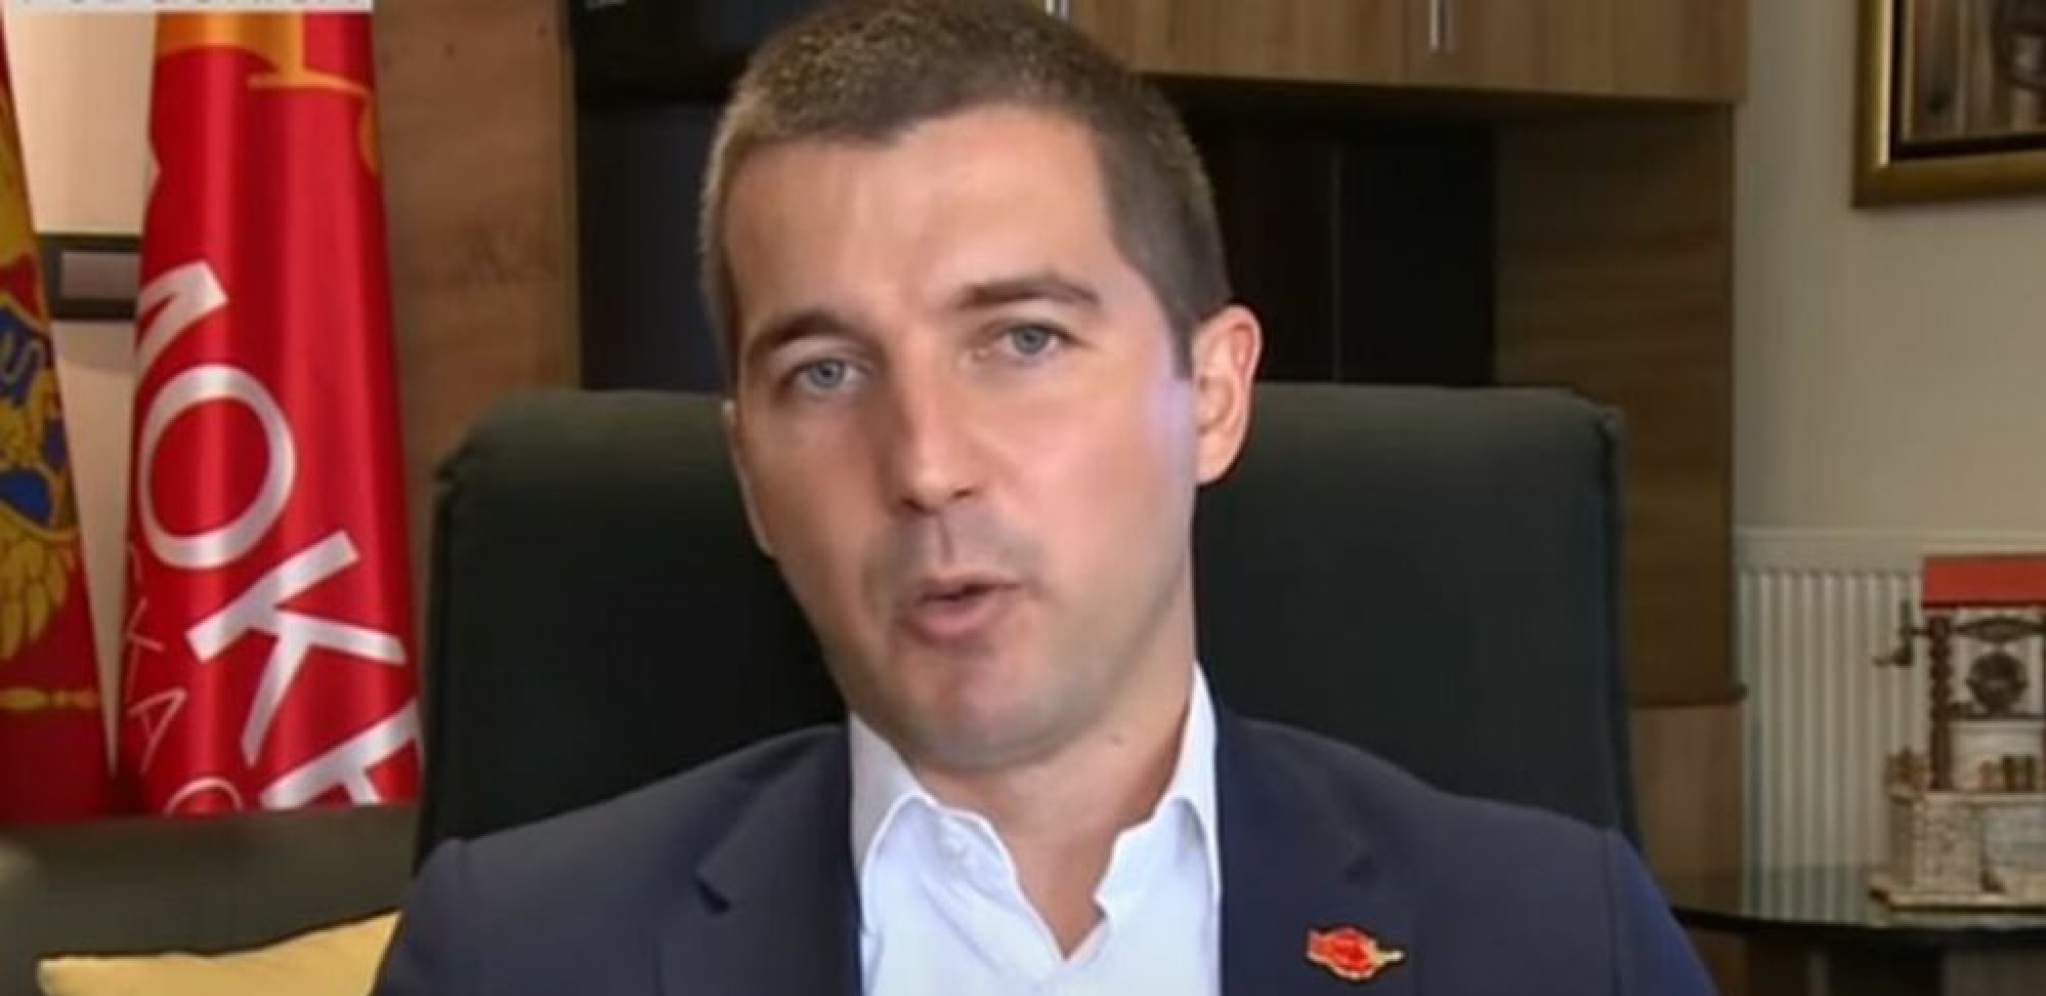 KORONA GLAVU ČUVA Sad kad je sve prošlo, predsednik crnogorske Skupštine može da dobije negativan test